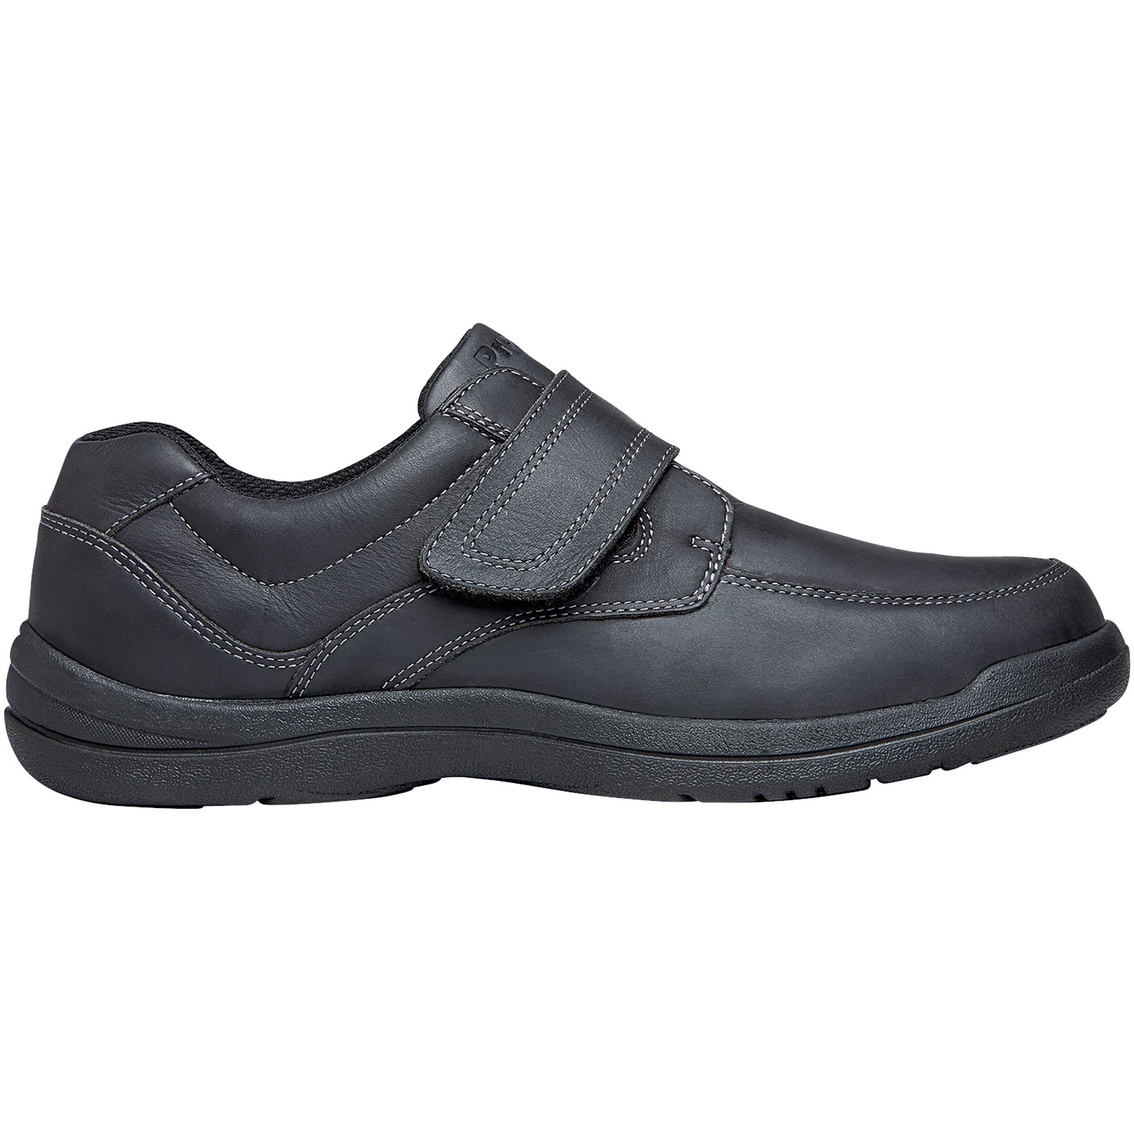 Propet Men's Gary A5500 Diabetic Walking Shoes | Walking | Shoes | Shop ...